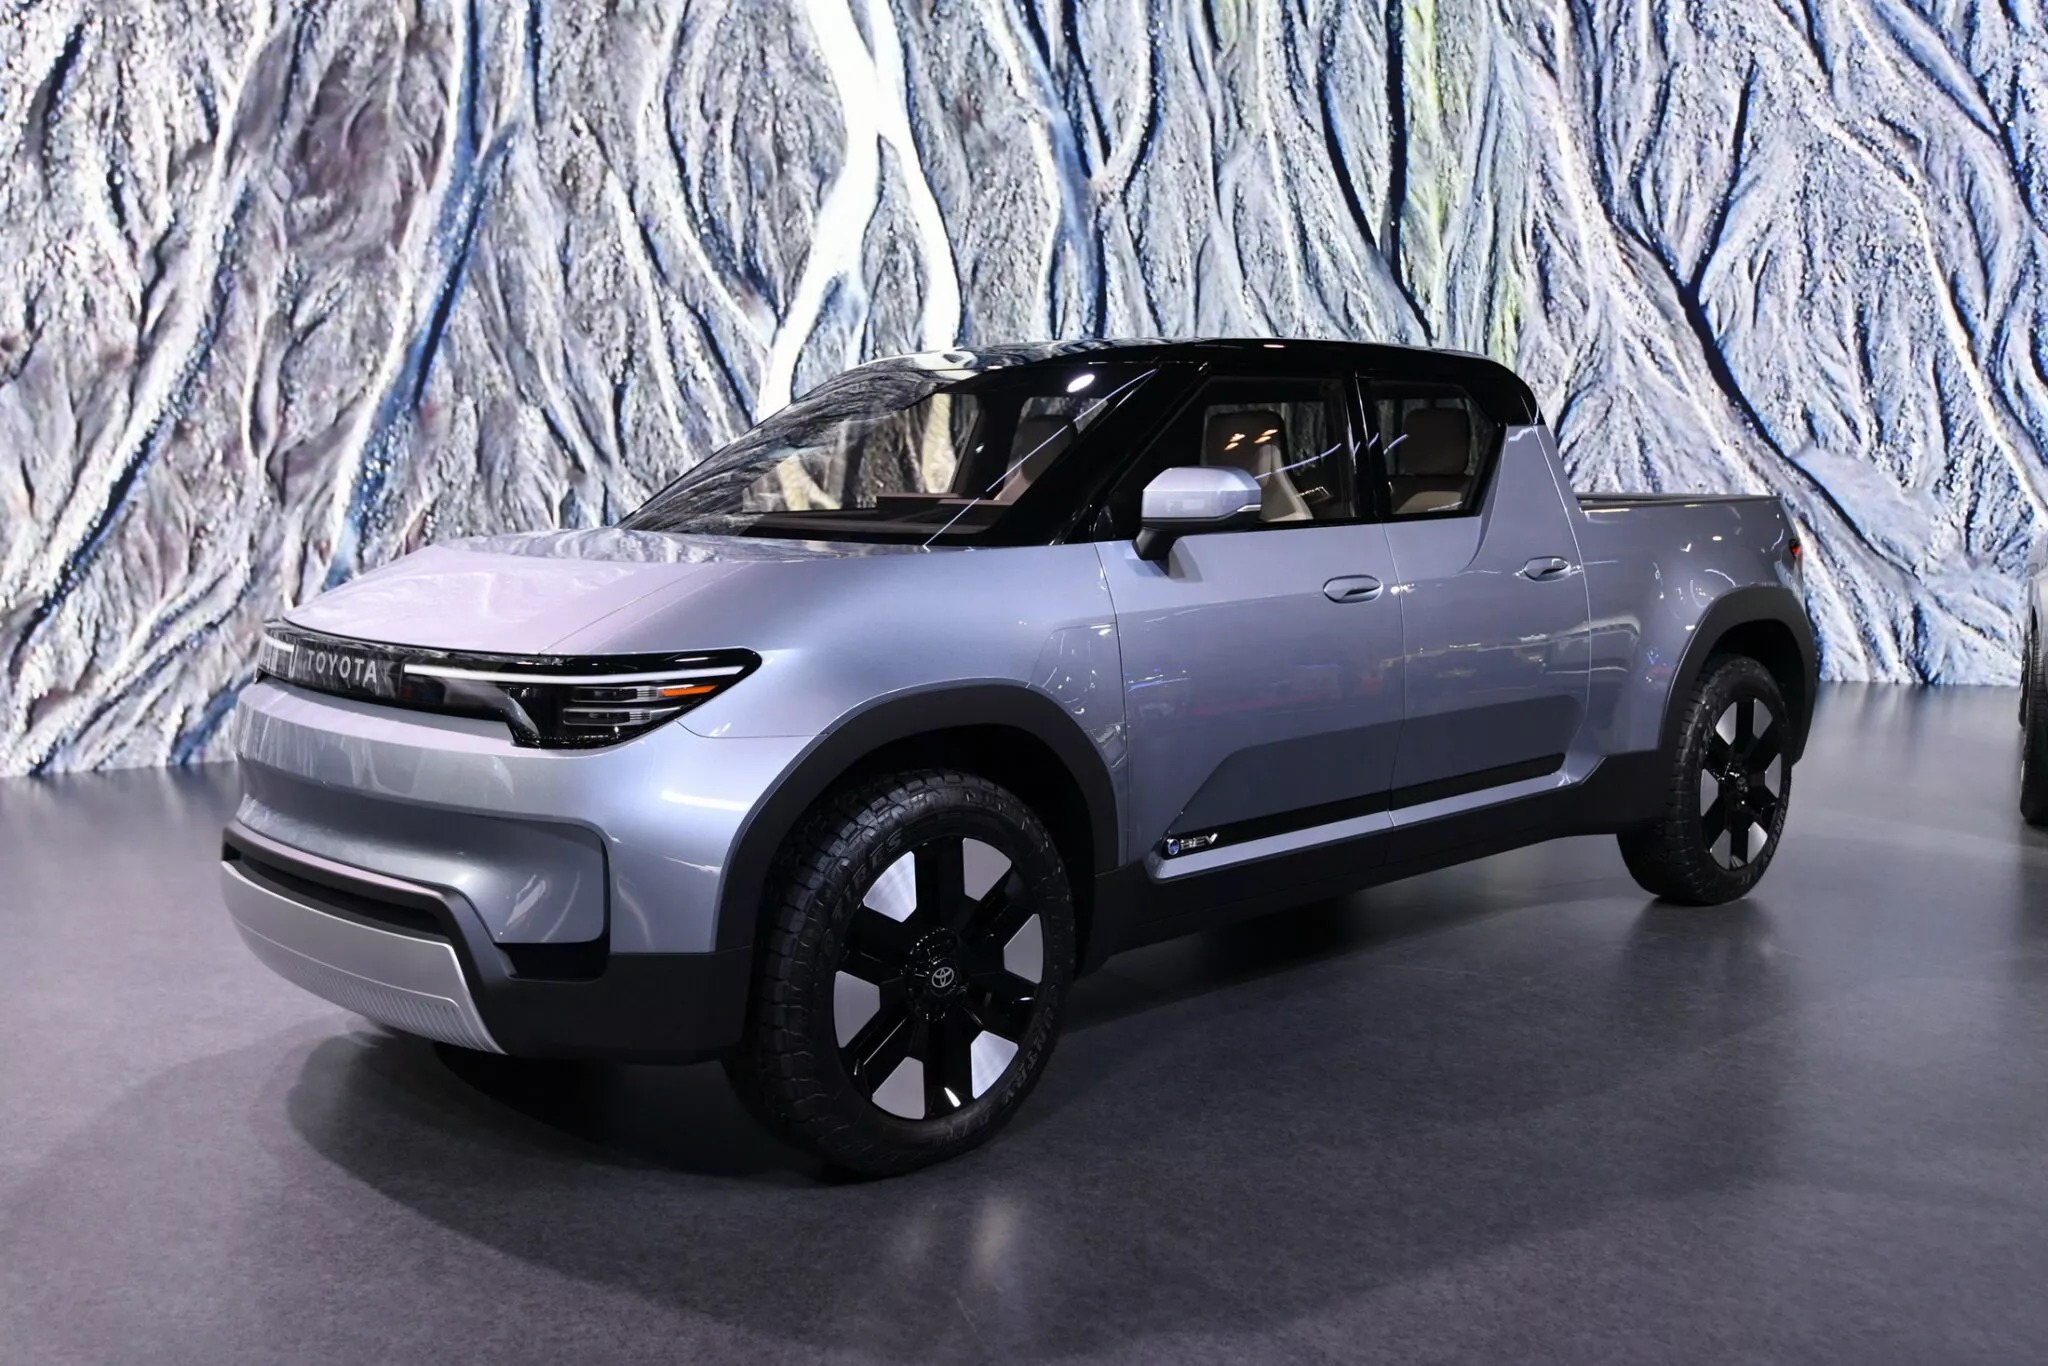 Toyota xác nhận Hilux thuần điện, sản xuất từ 2025 - Ảnh 4.